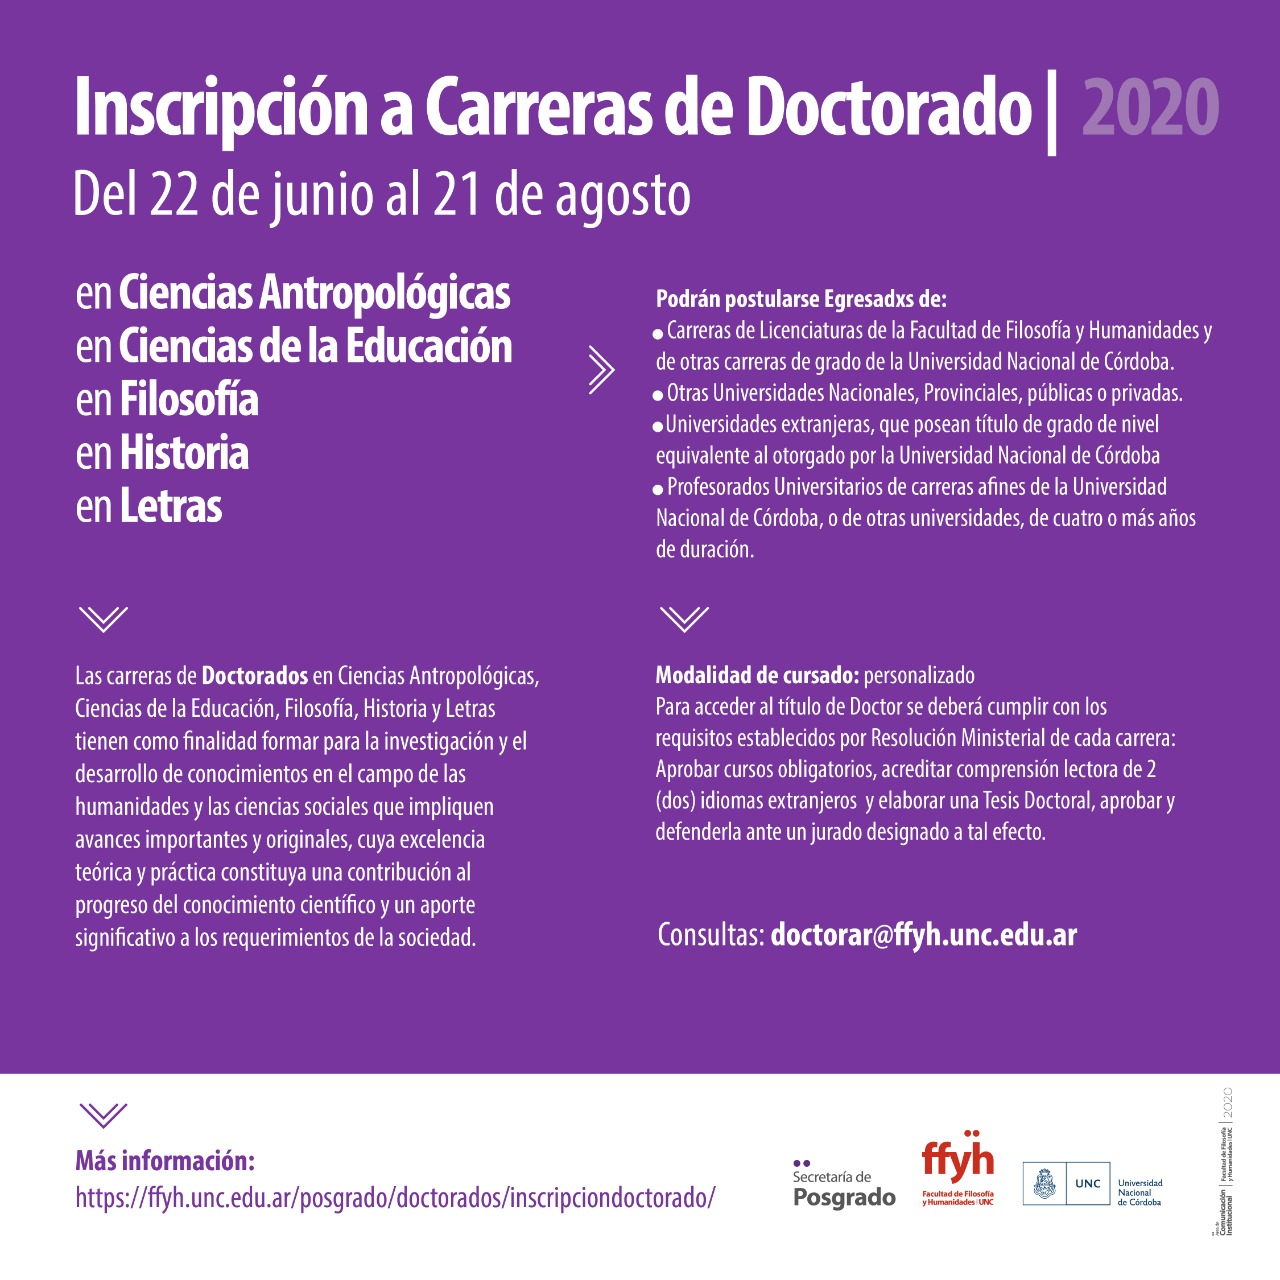 Inscripciones abiertas a Carreras de Doctorado - 2020